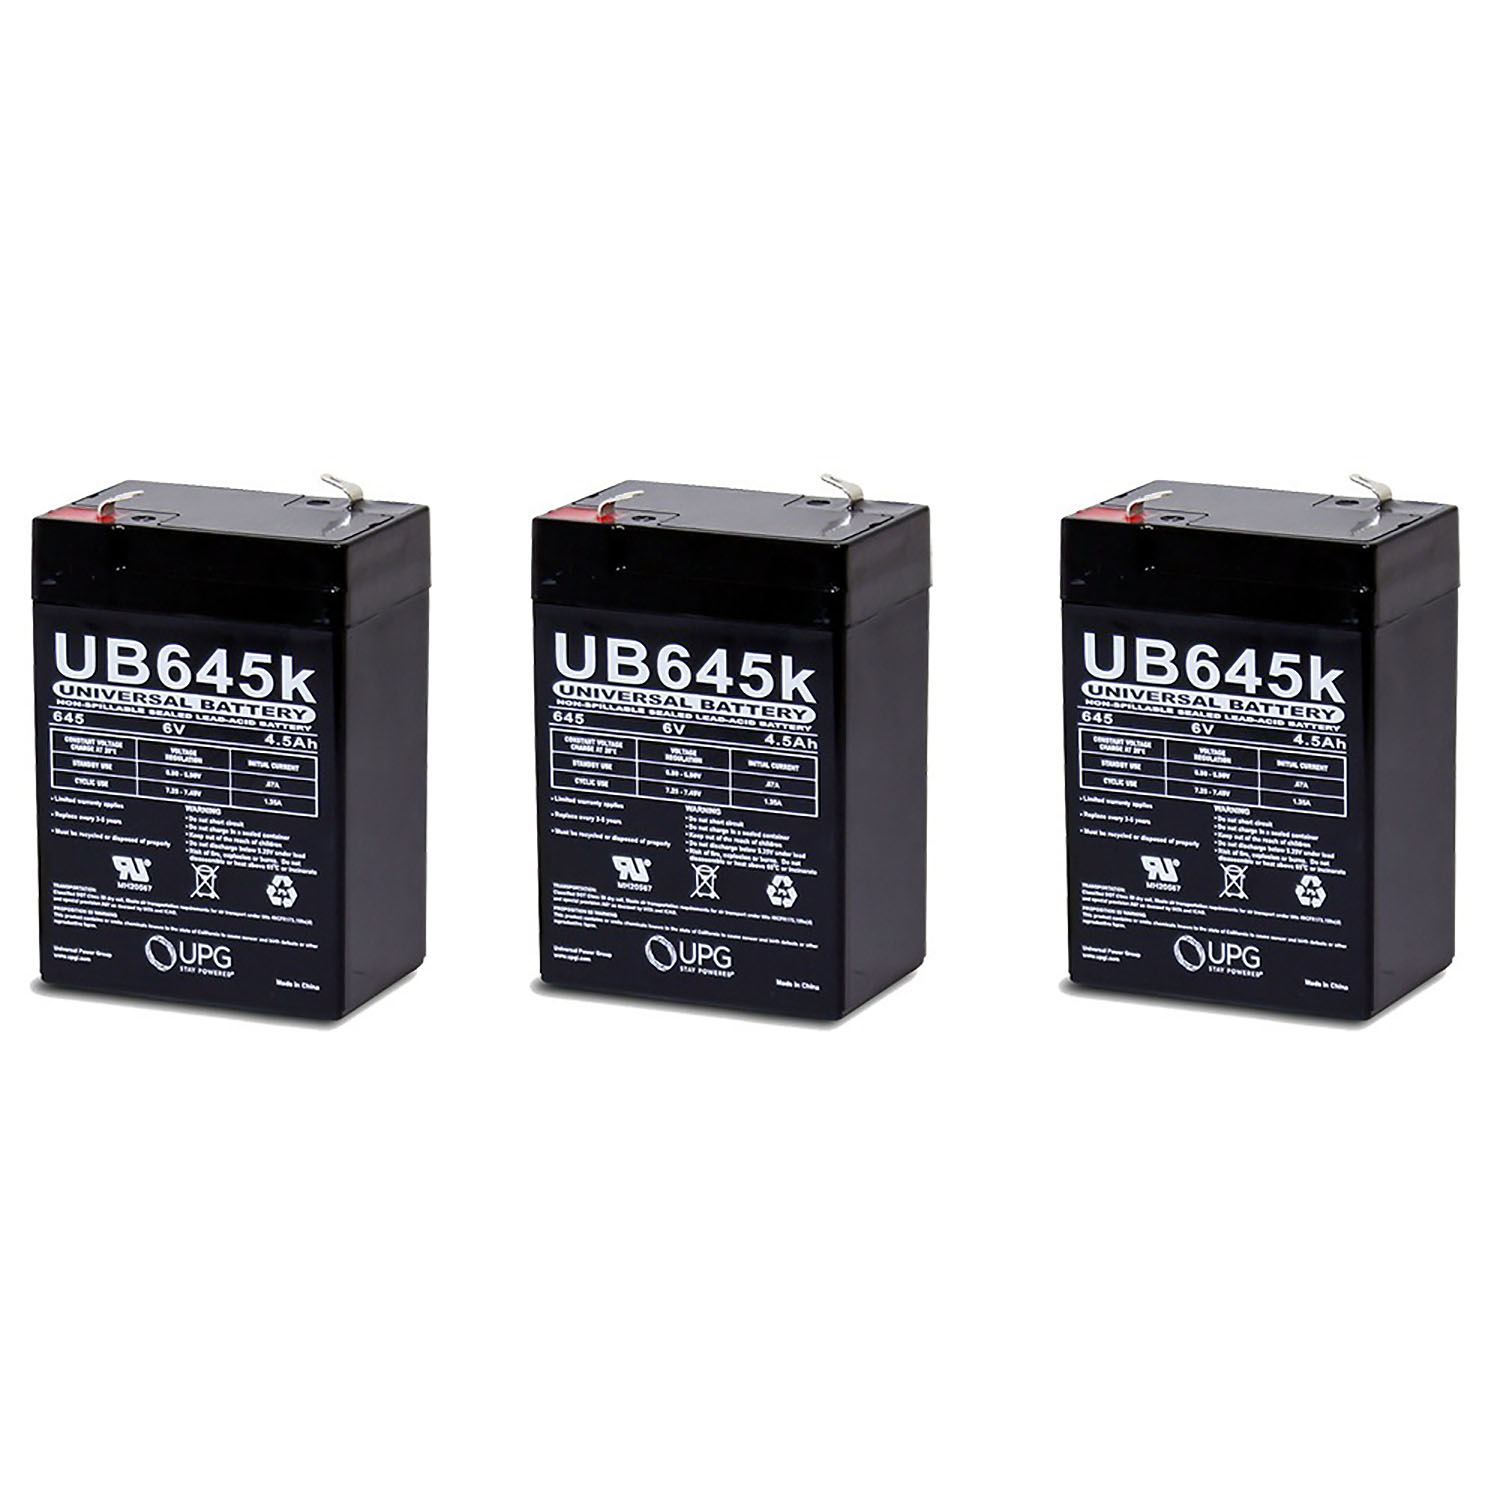 UB645 PS640 6V 4.5Ah Sealed Lead Acid SLA Alarm Battery - 3 Pack - image 1 of 1